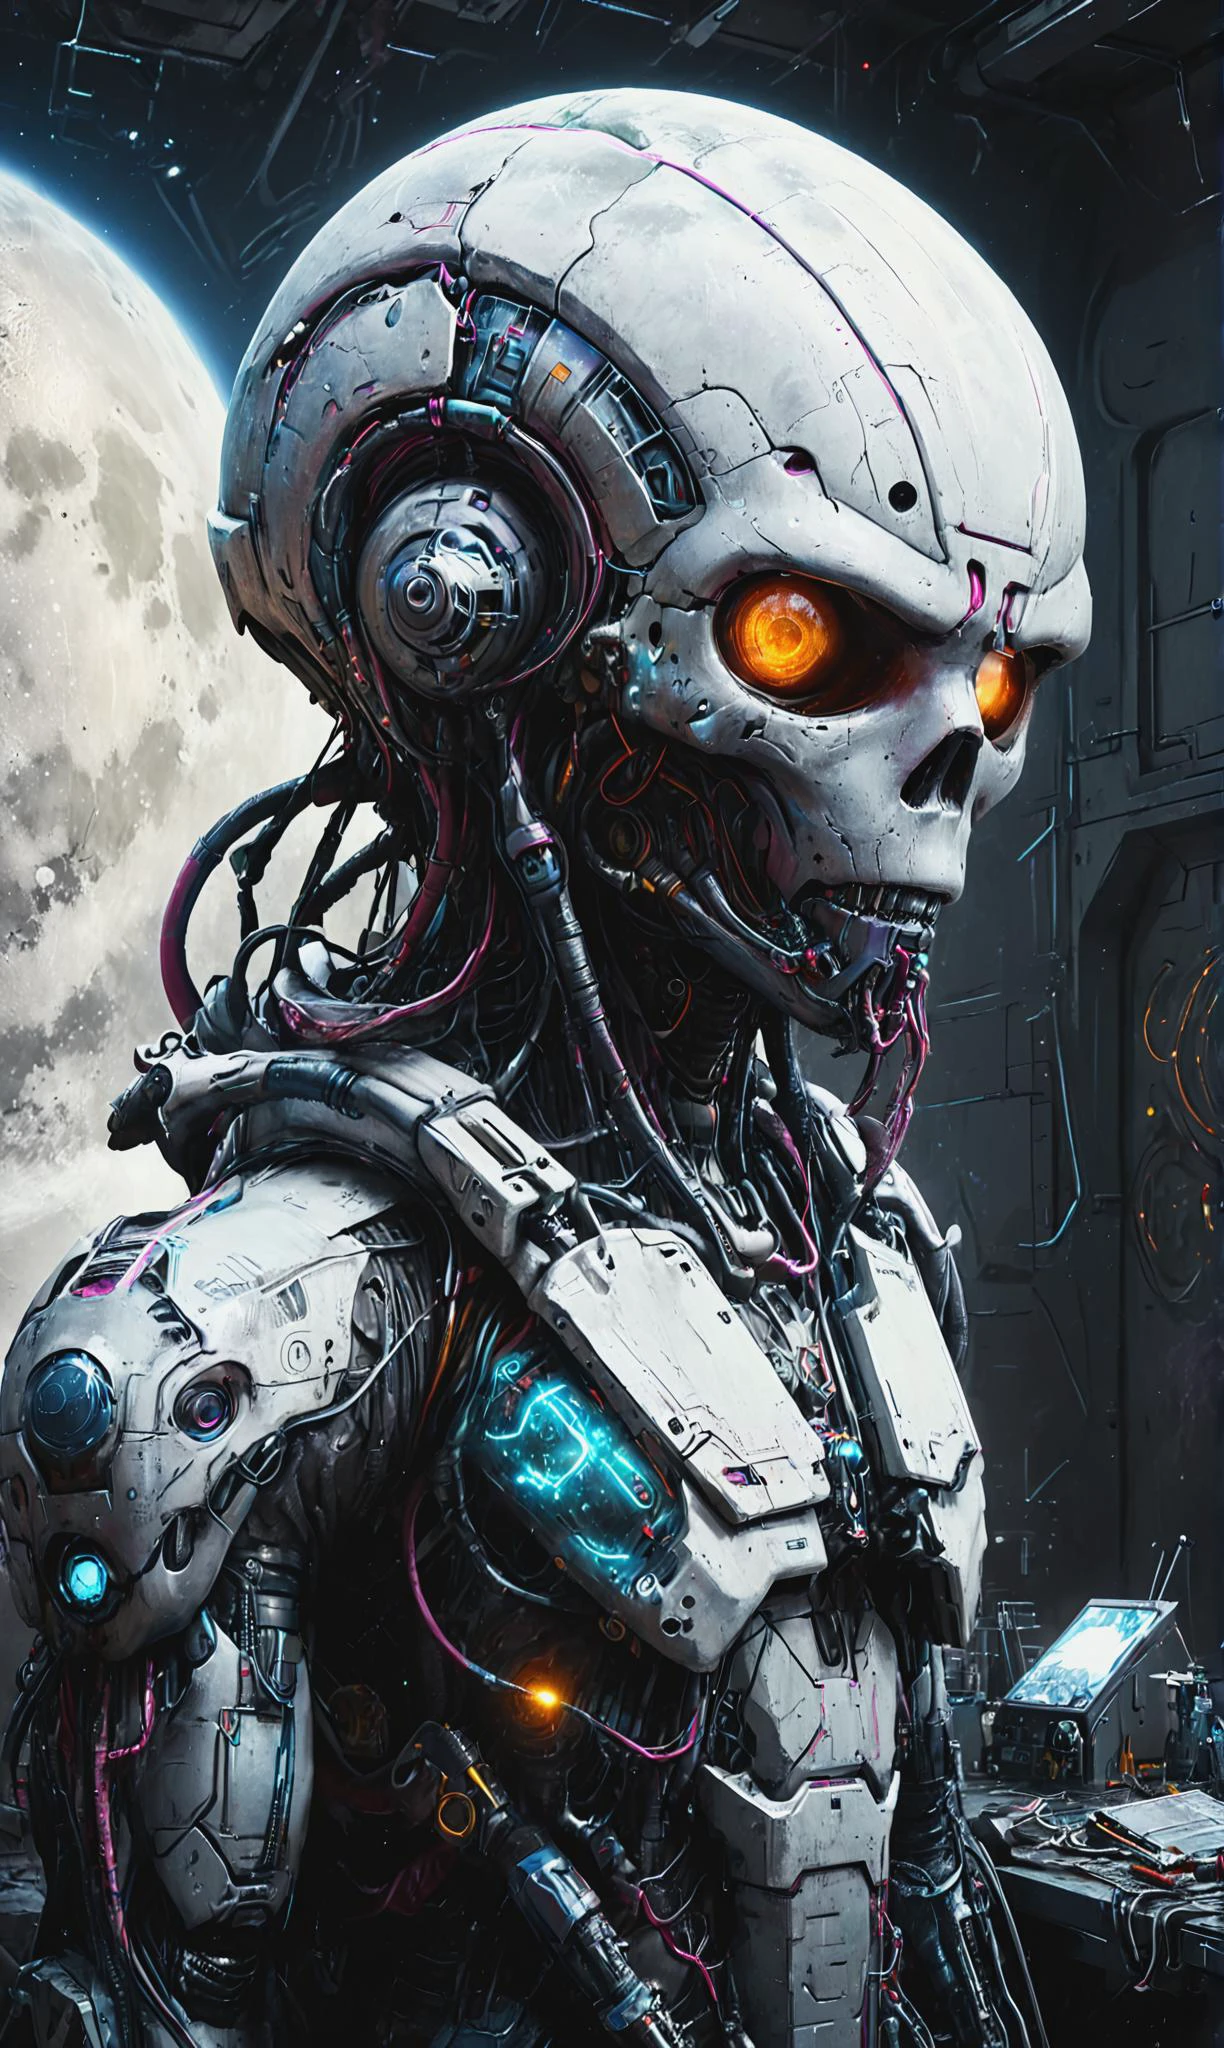 Retrato digital detallado de un cyborg biopunkai en un centro de investigación lunar descubriendo artefactos extraterrestres, ais-graffiti, iluminación global,  